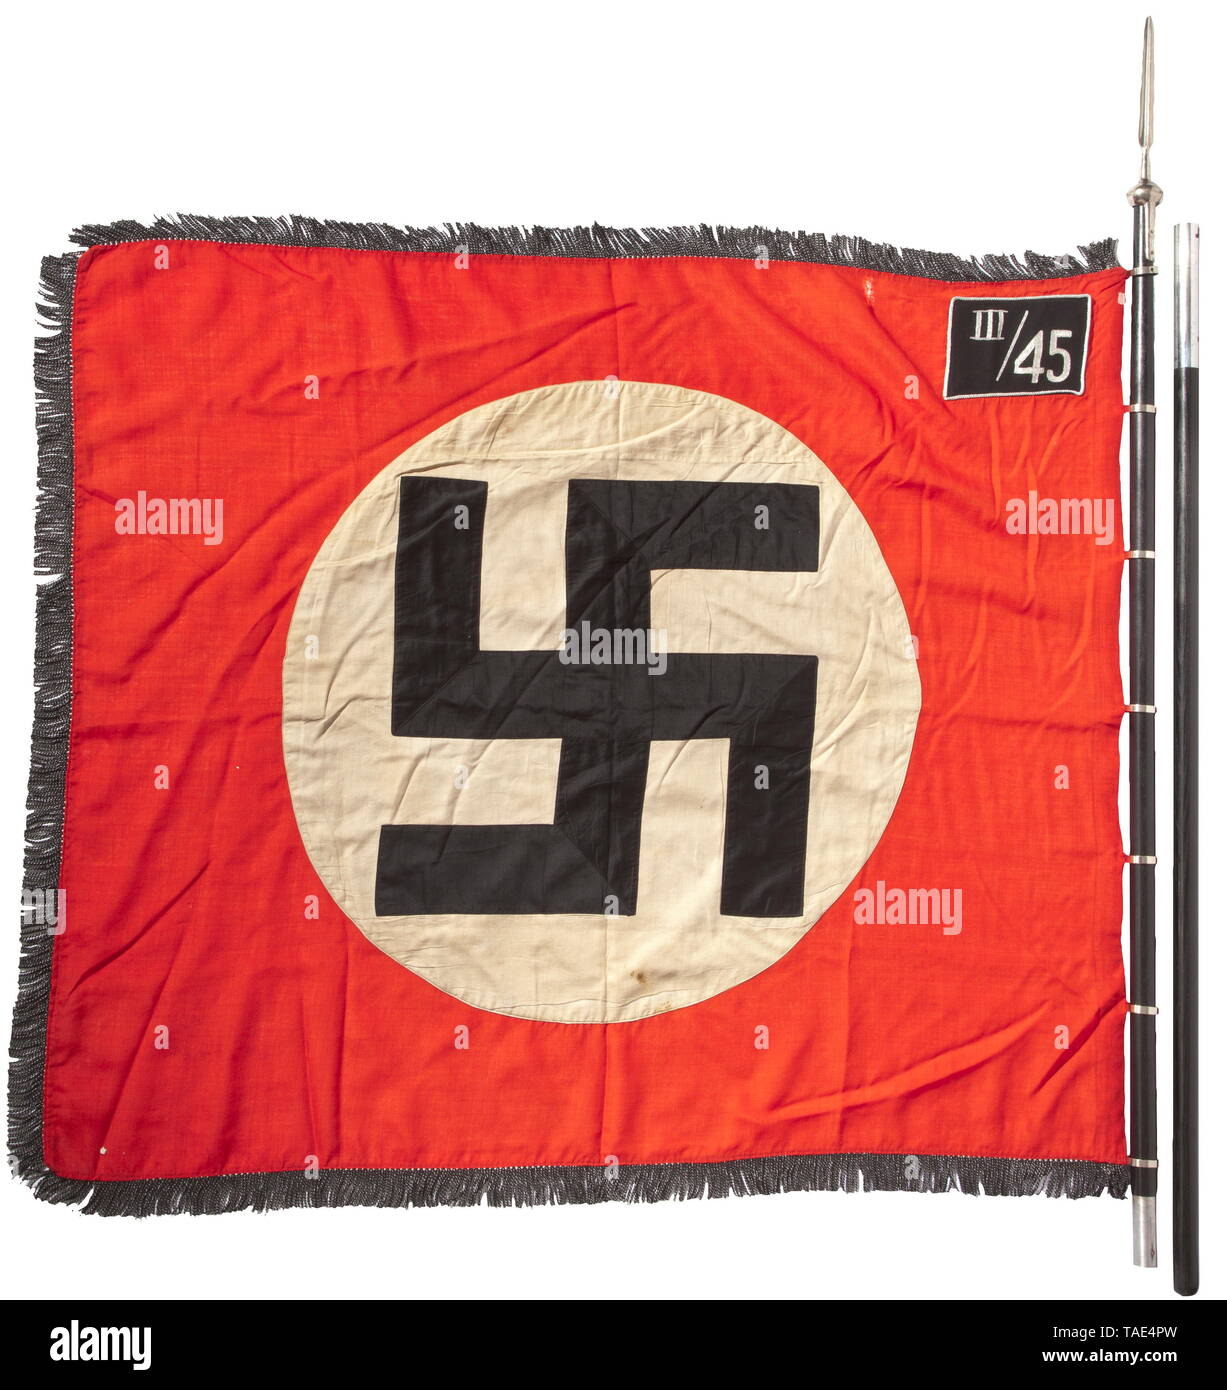 Un pavillon de Sturm SS III./45/Rosenberg en Haute Silésie complet avec mât et drapeau rouge finial chiffon avec frange noir et argent, sur trois côtés, les deux faces d'un disque blanc cousues-in et une croix gammée inclinée avec des surfaces noires taillées dans la corde d'argent. Brodé argent 'III/45' pour le 3ème Sturmbann Rosenberg (O.S) de 45e SS Standarte pied Neisse (O.S.). Sept-cousu directement sur les joints toriques standard nickelé. L'estampillage d'approvisionnement, les petites imperfections. Dimensions ca. 120 x 145 cm. Deux-pièces flagstaff en bois noir. Embout nickelé sous la forme d'une pointe de lance, de poing RZM M3/39/'40, Editorial-Use-seulement Banque D'Images